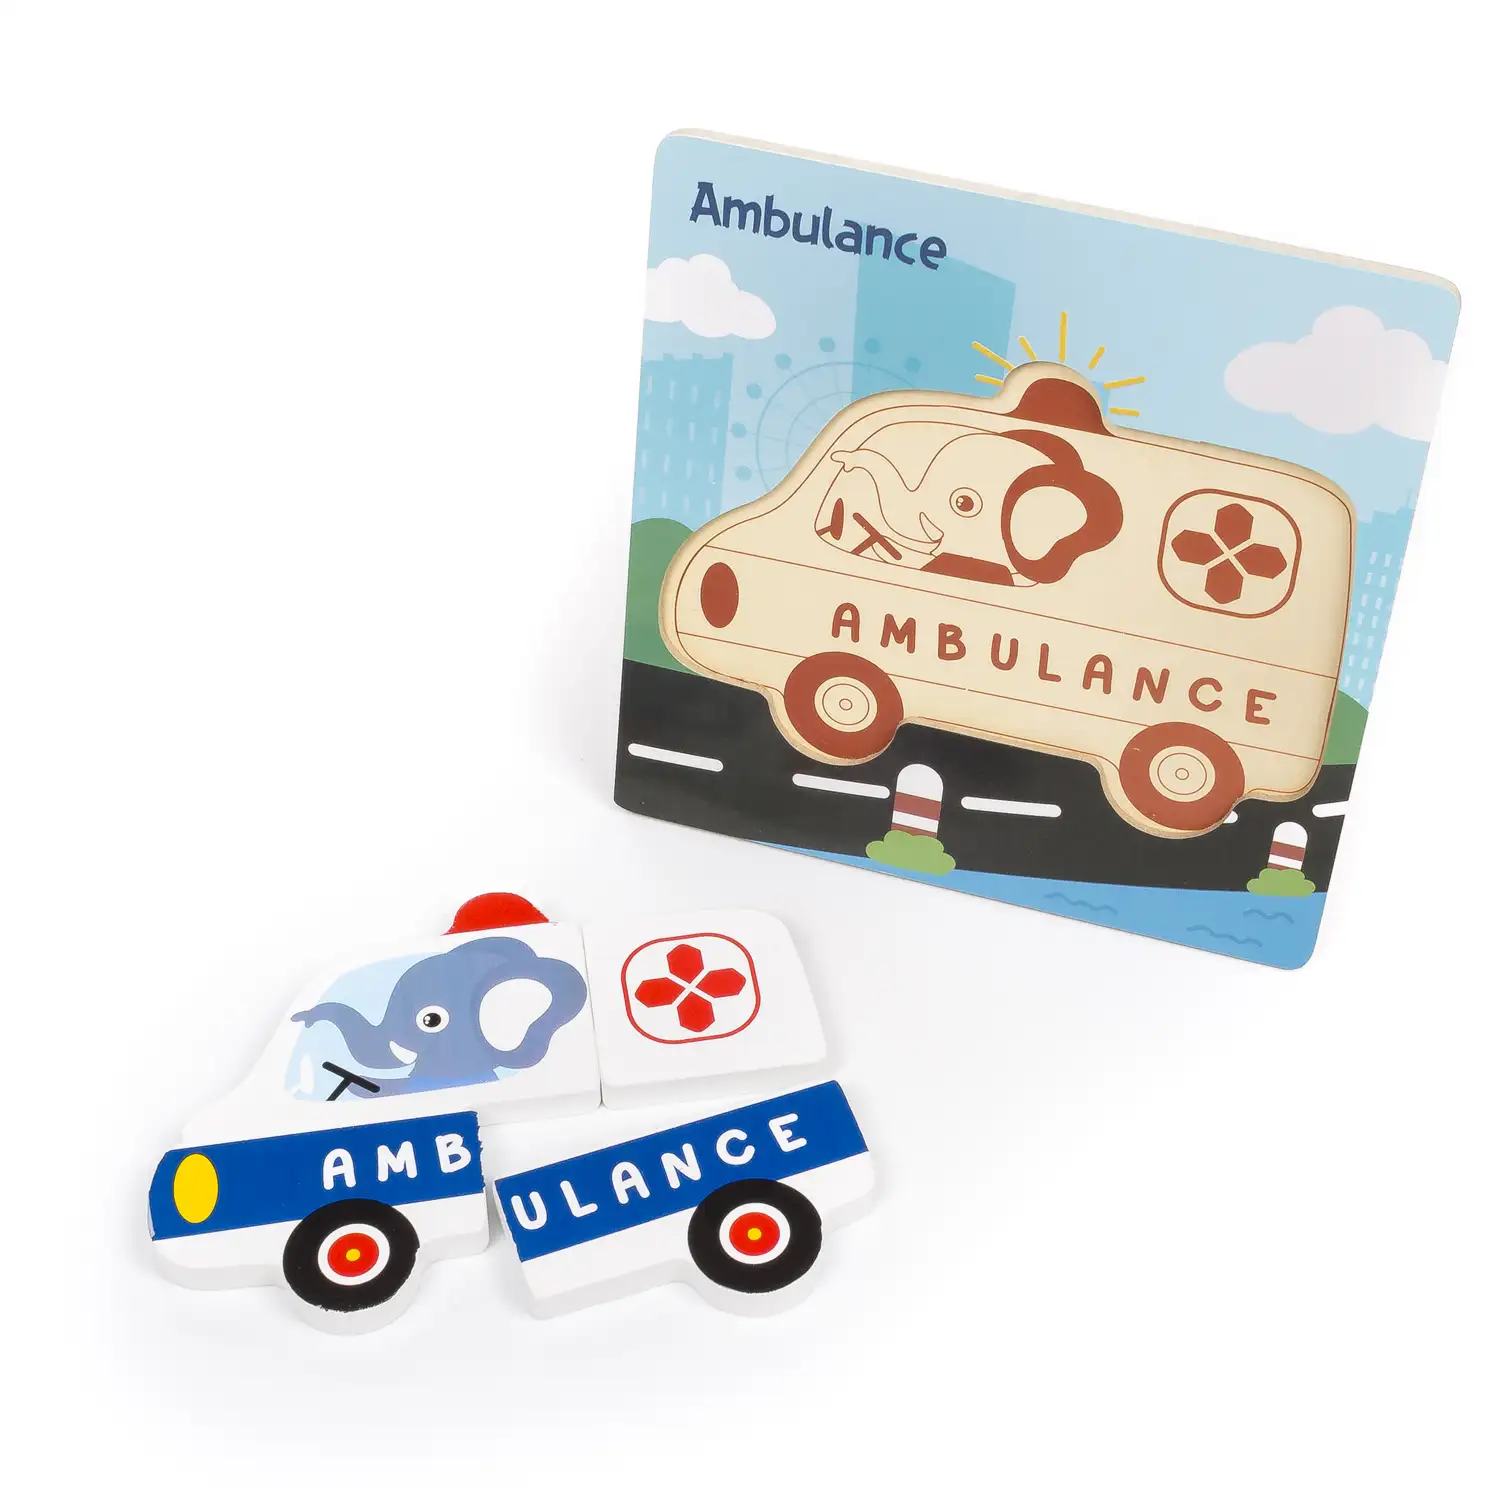 Puzle de madera para niños, de 4 piezas. Diseño ambulancia.